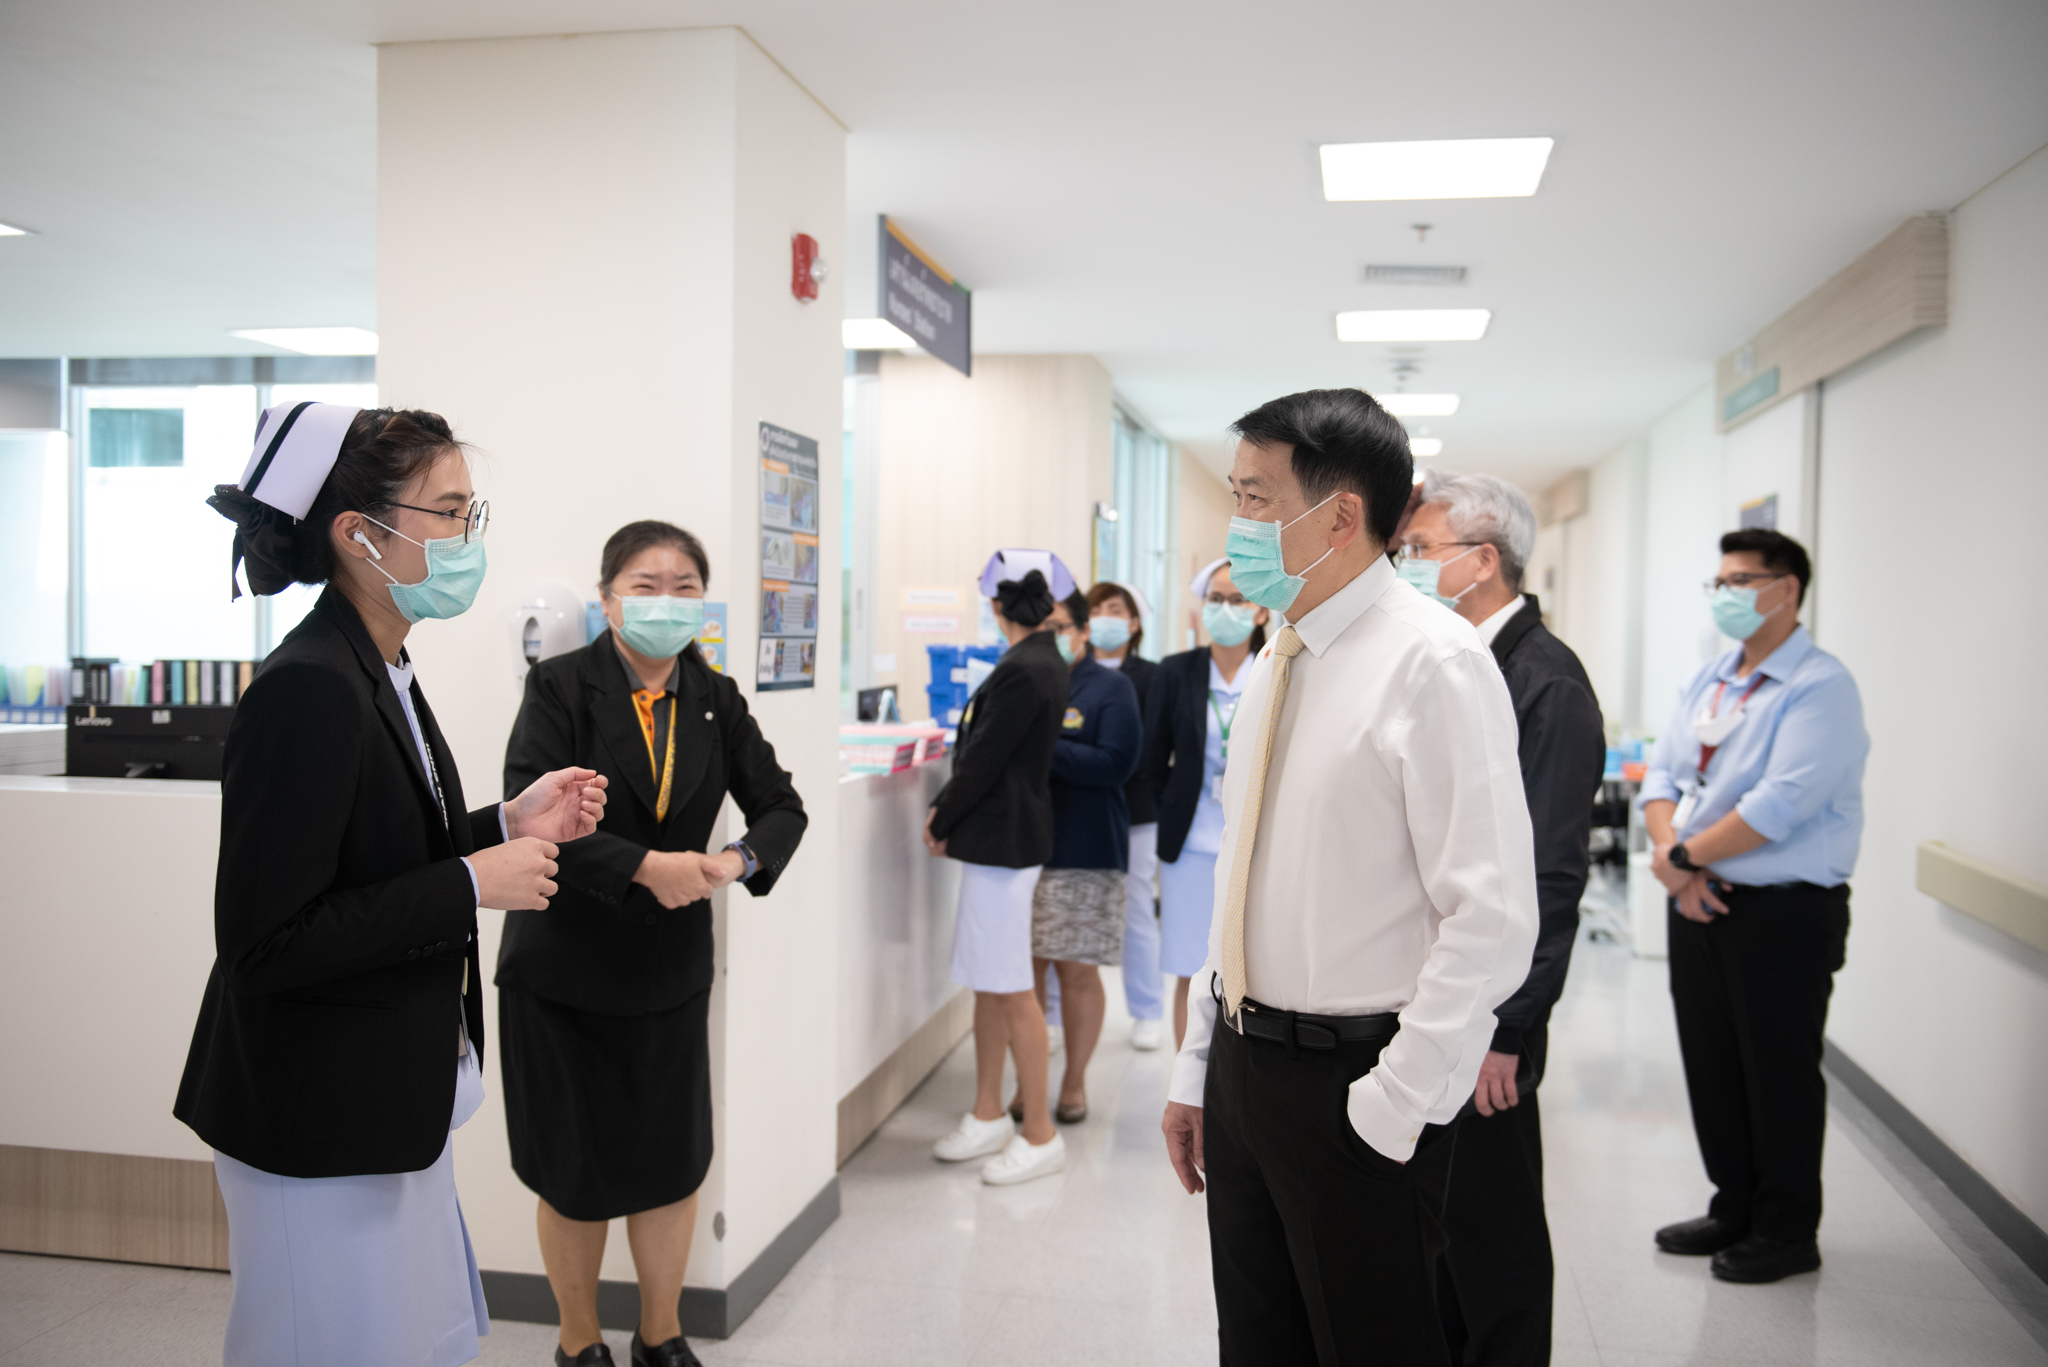 กิจกรรม Leadership Walk Round โรงพยาบาลรามาธิบดีจักรีนฤบดินทร์ โดยกลุ่มภารกิจดูแลสุขภาพ